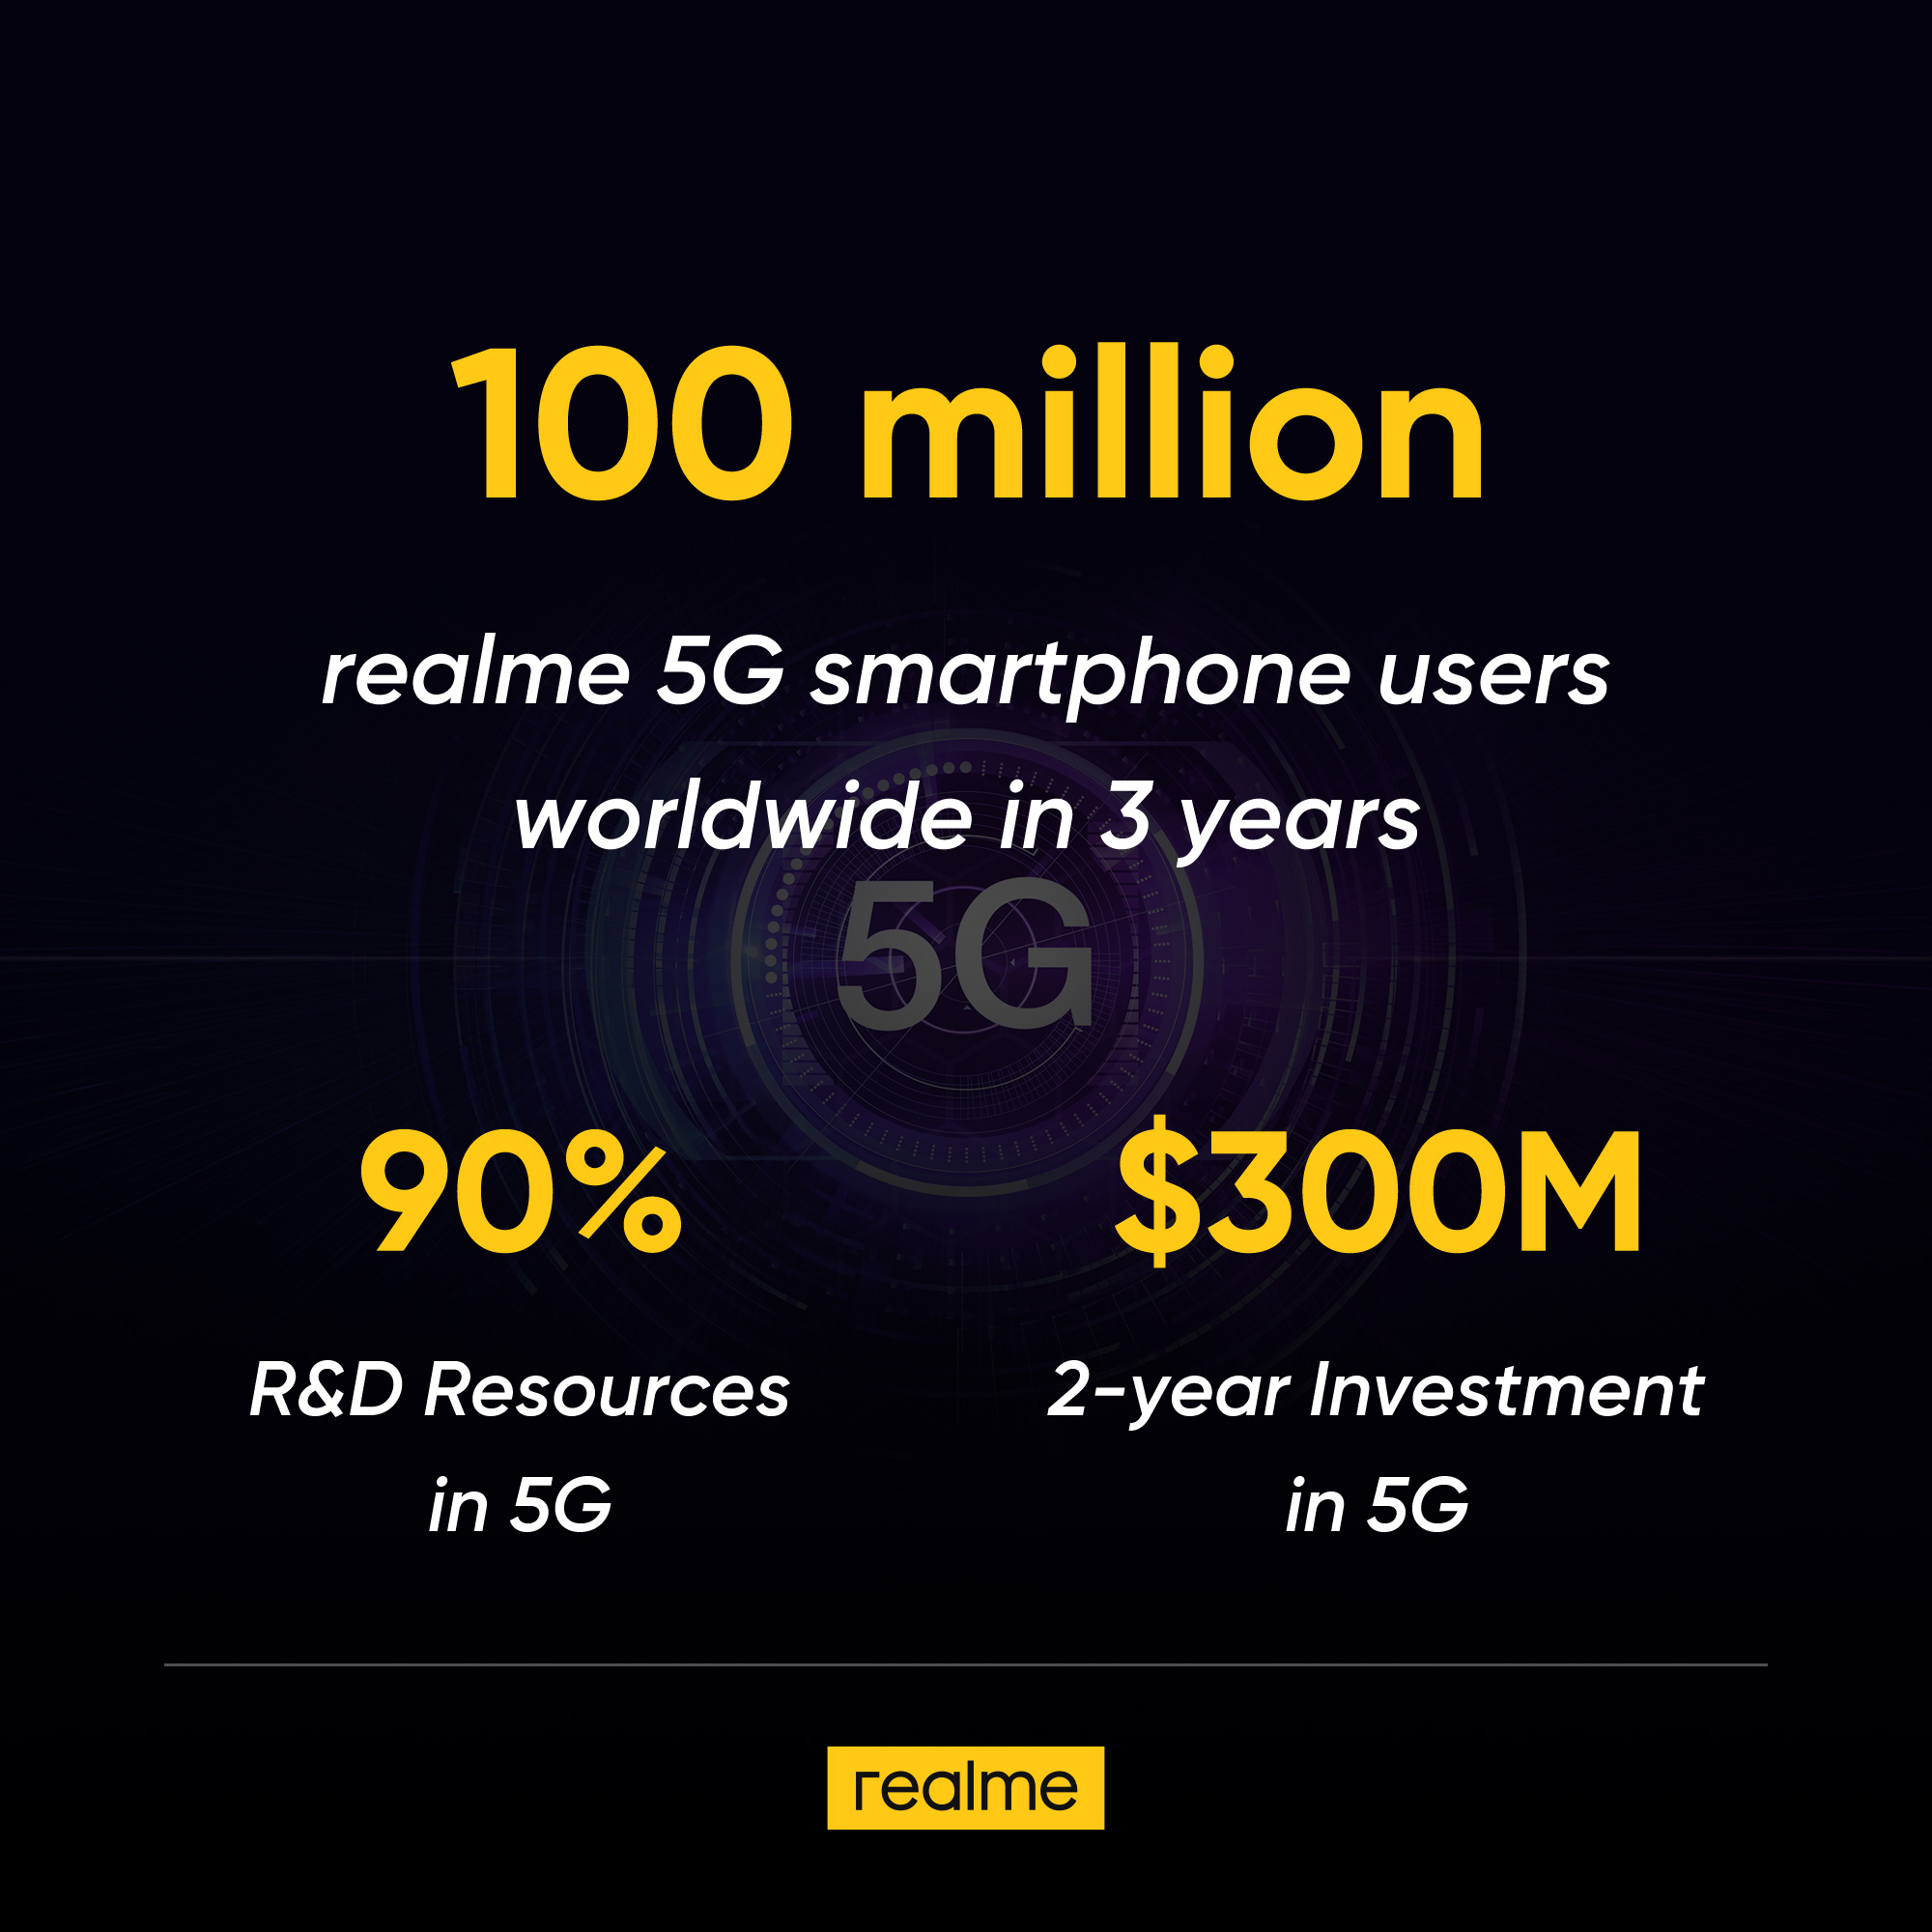 5G smartphones